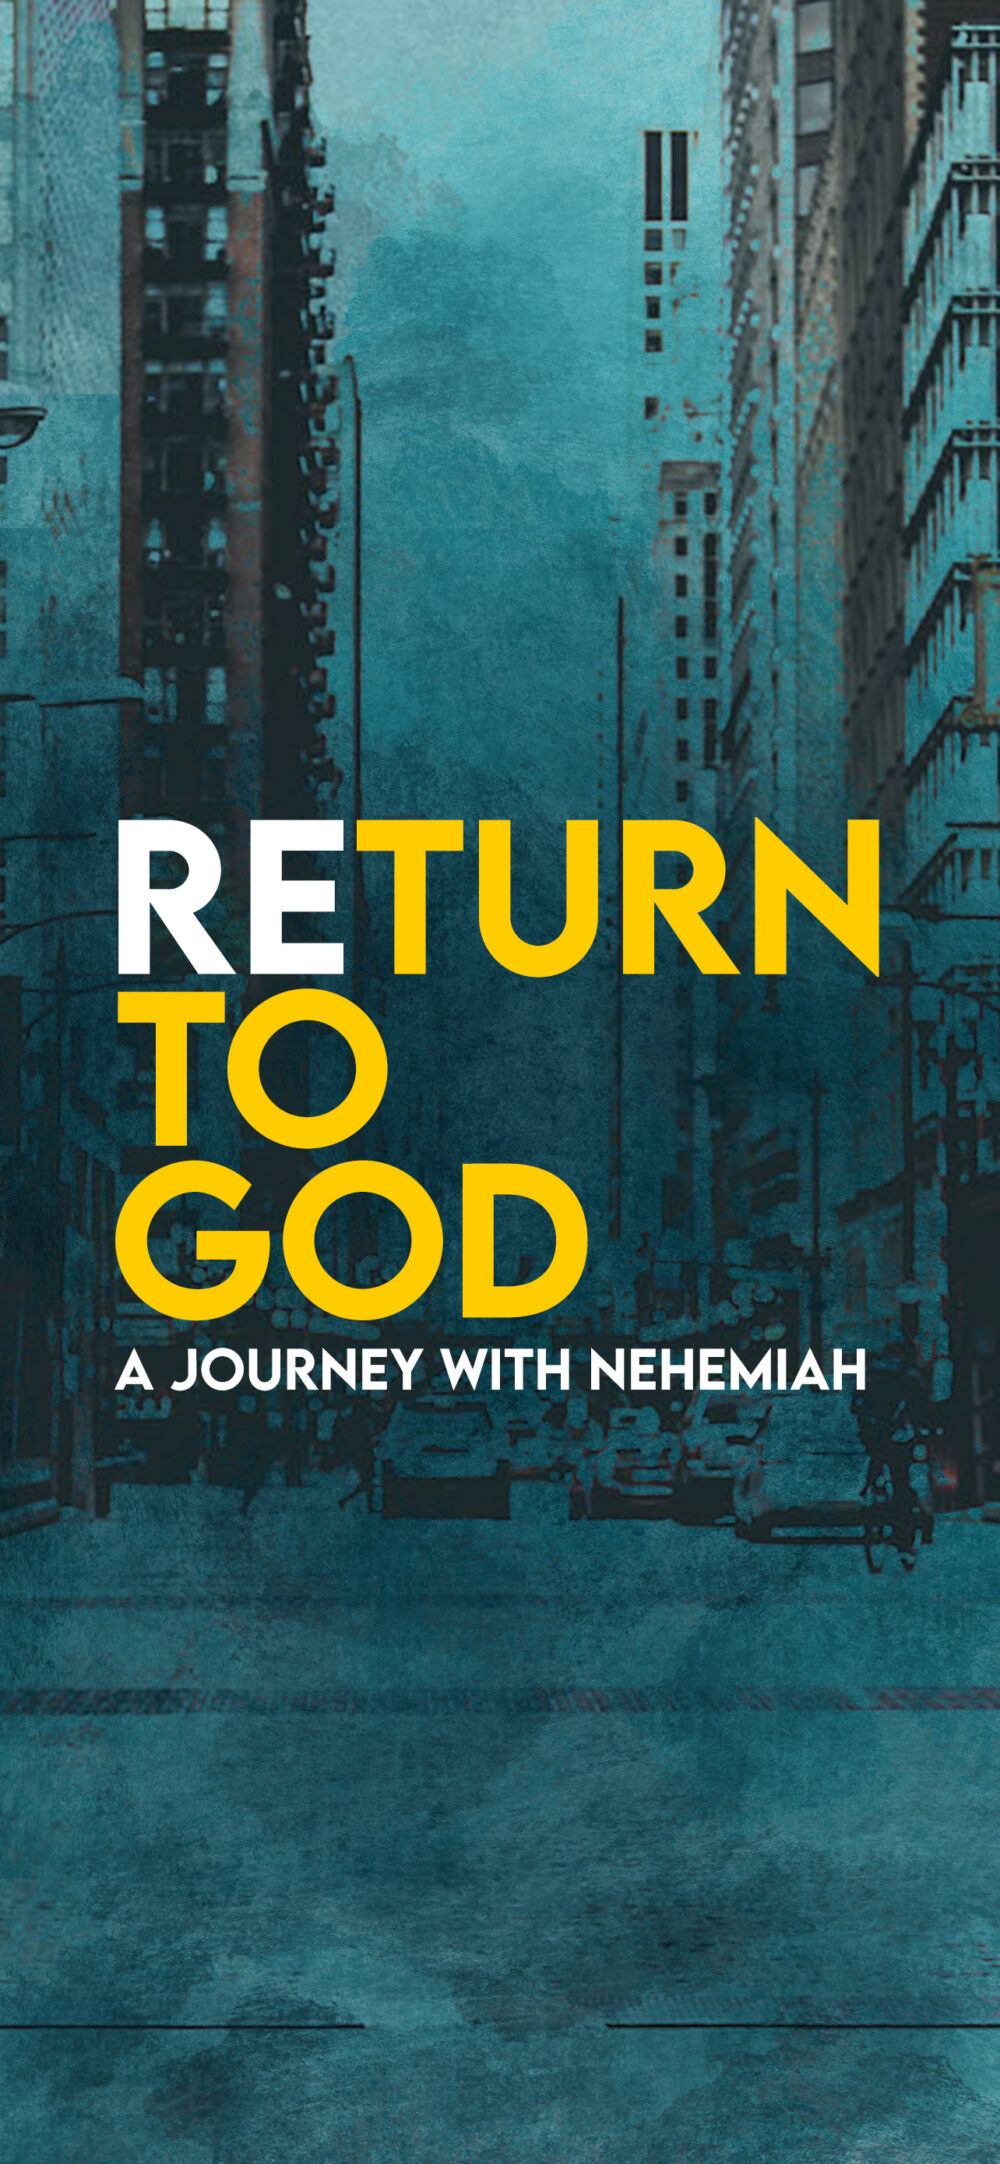 Return to God: Populate & Invigorate Image